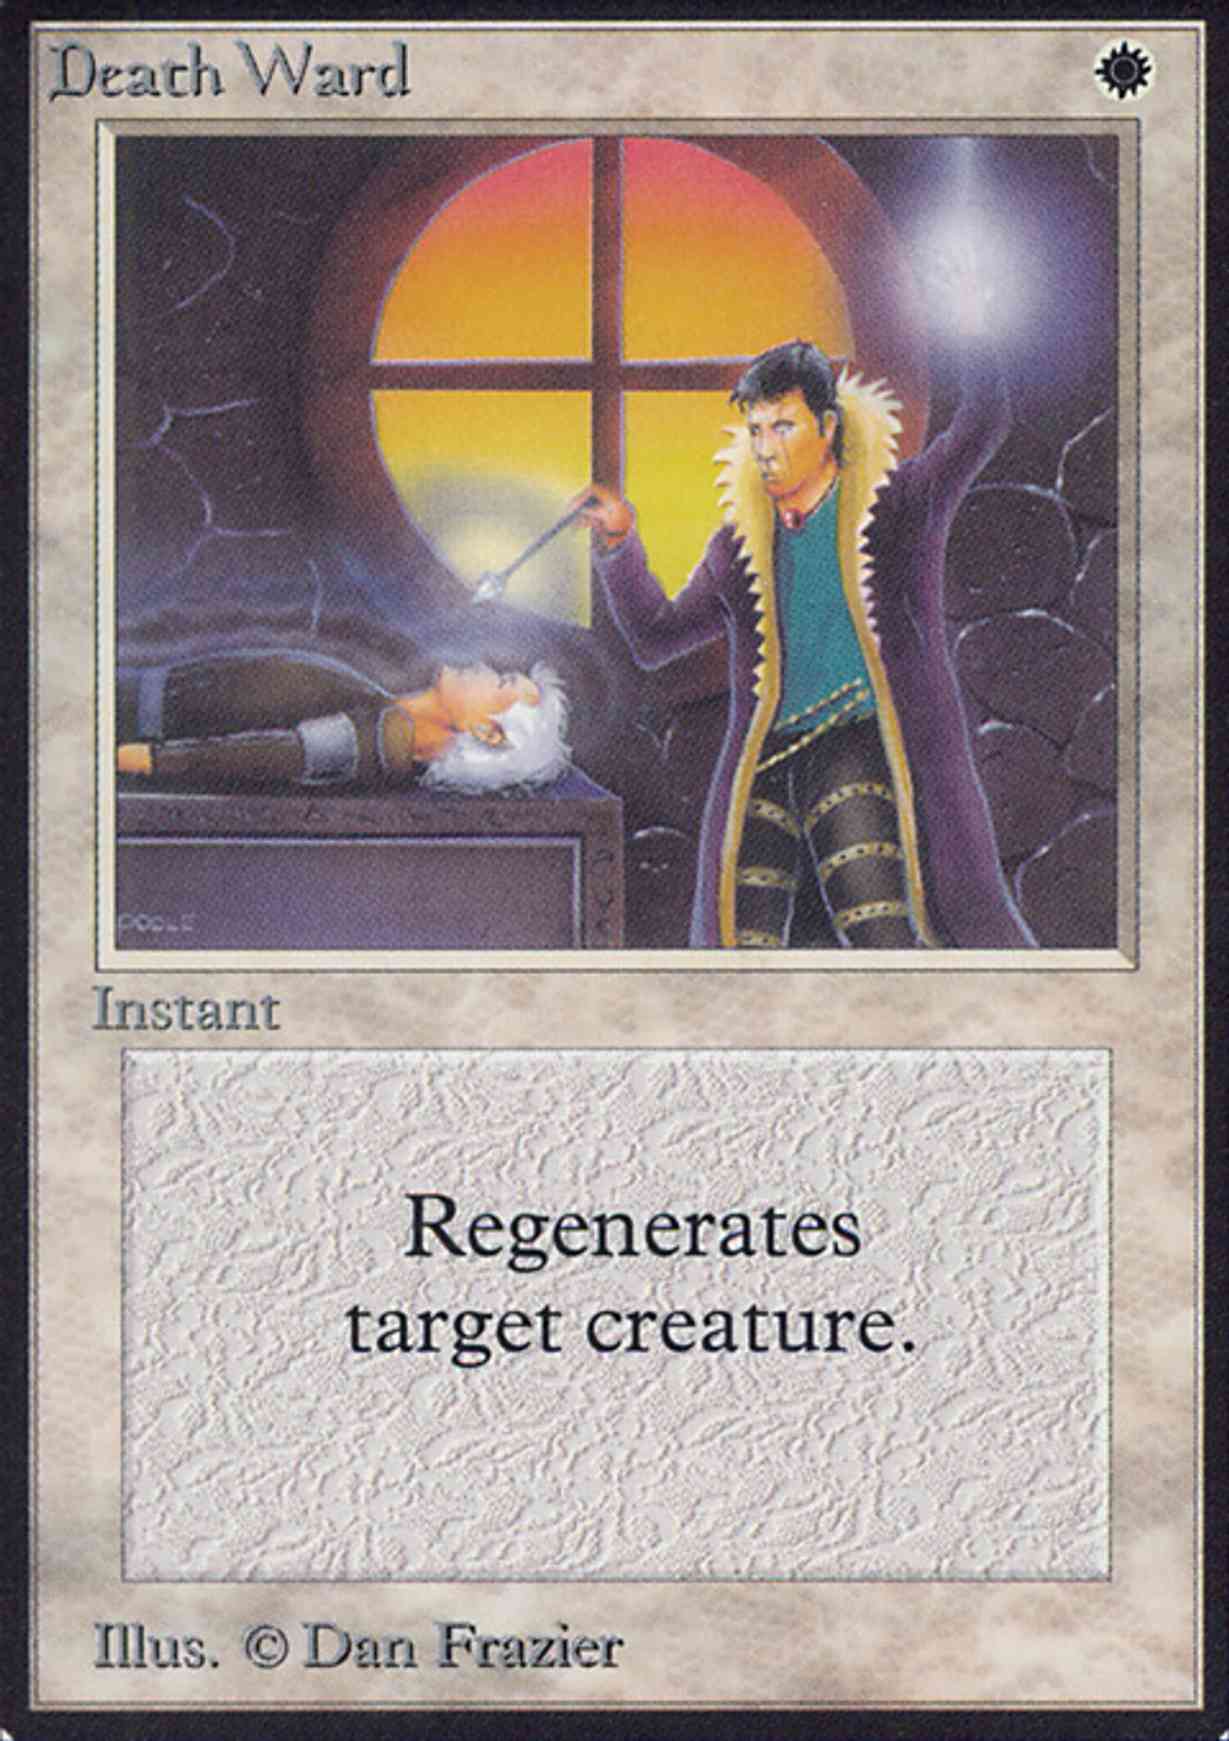 Death Ward magic card front